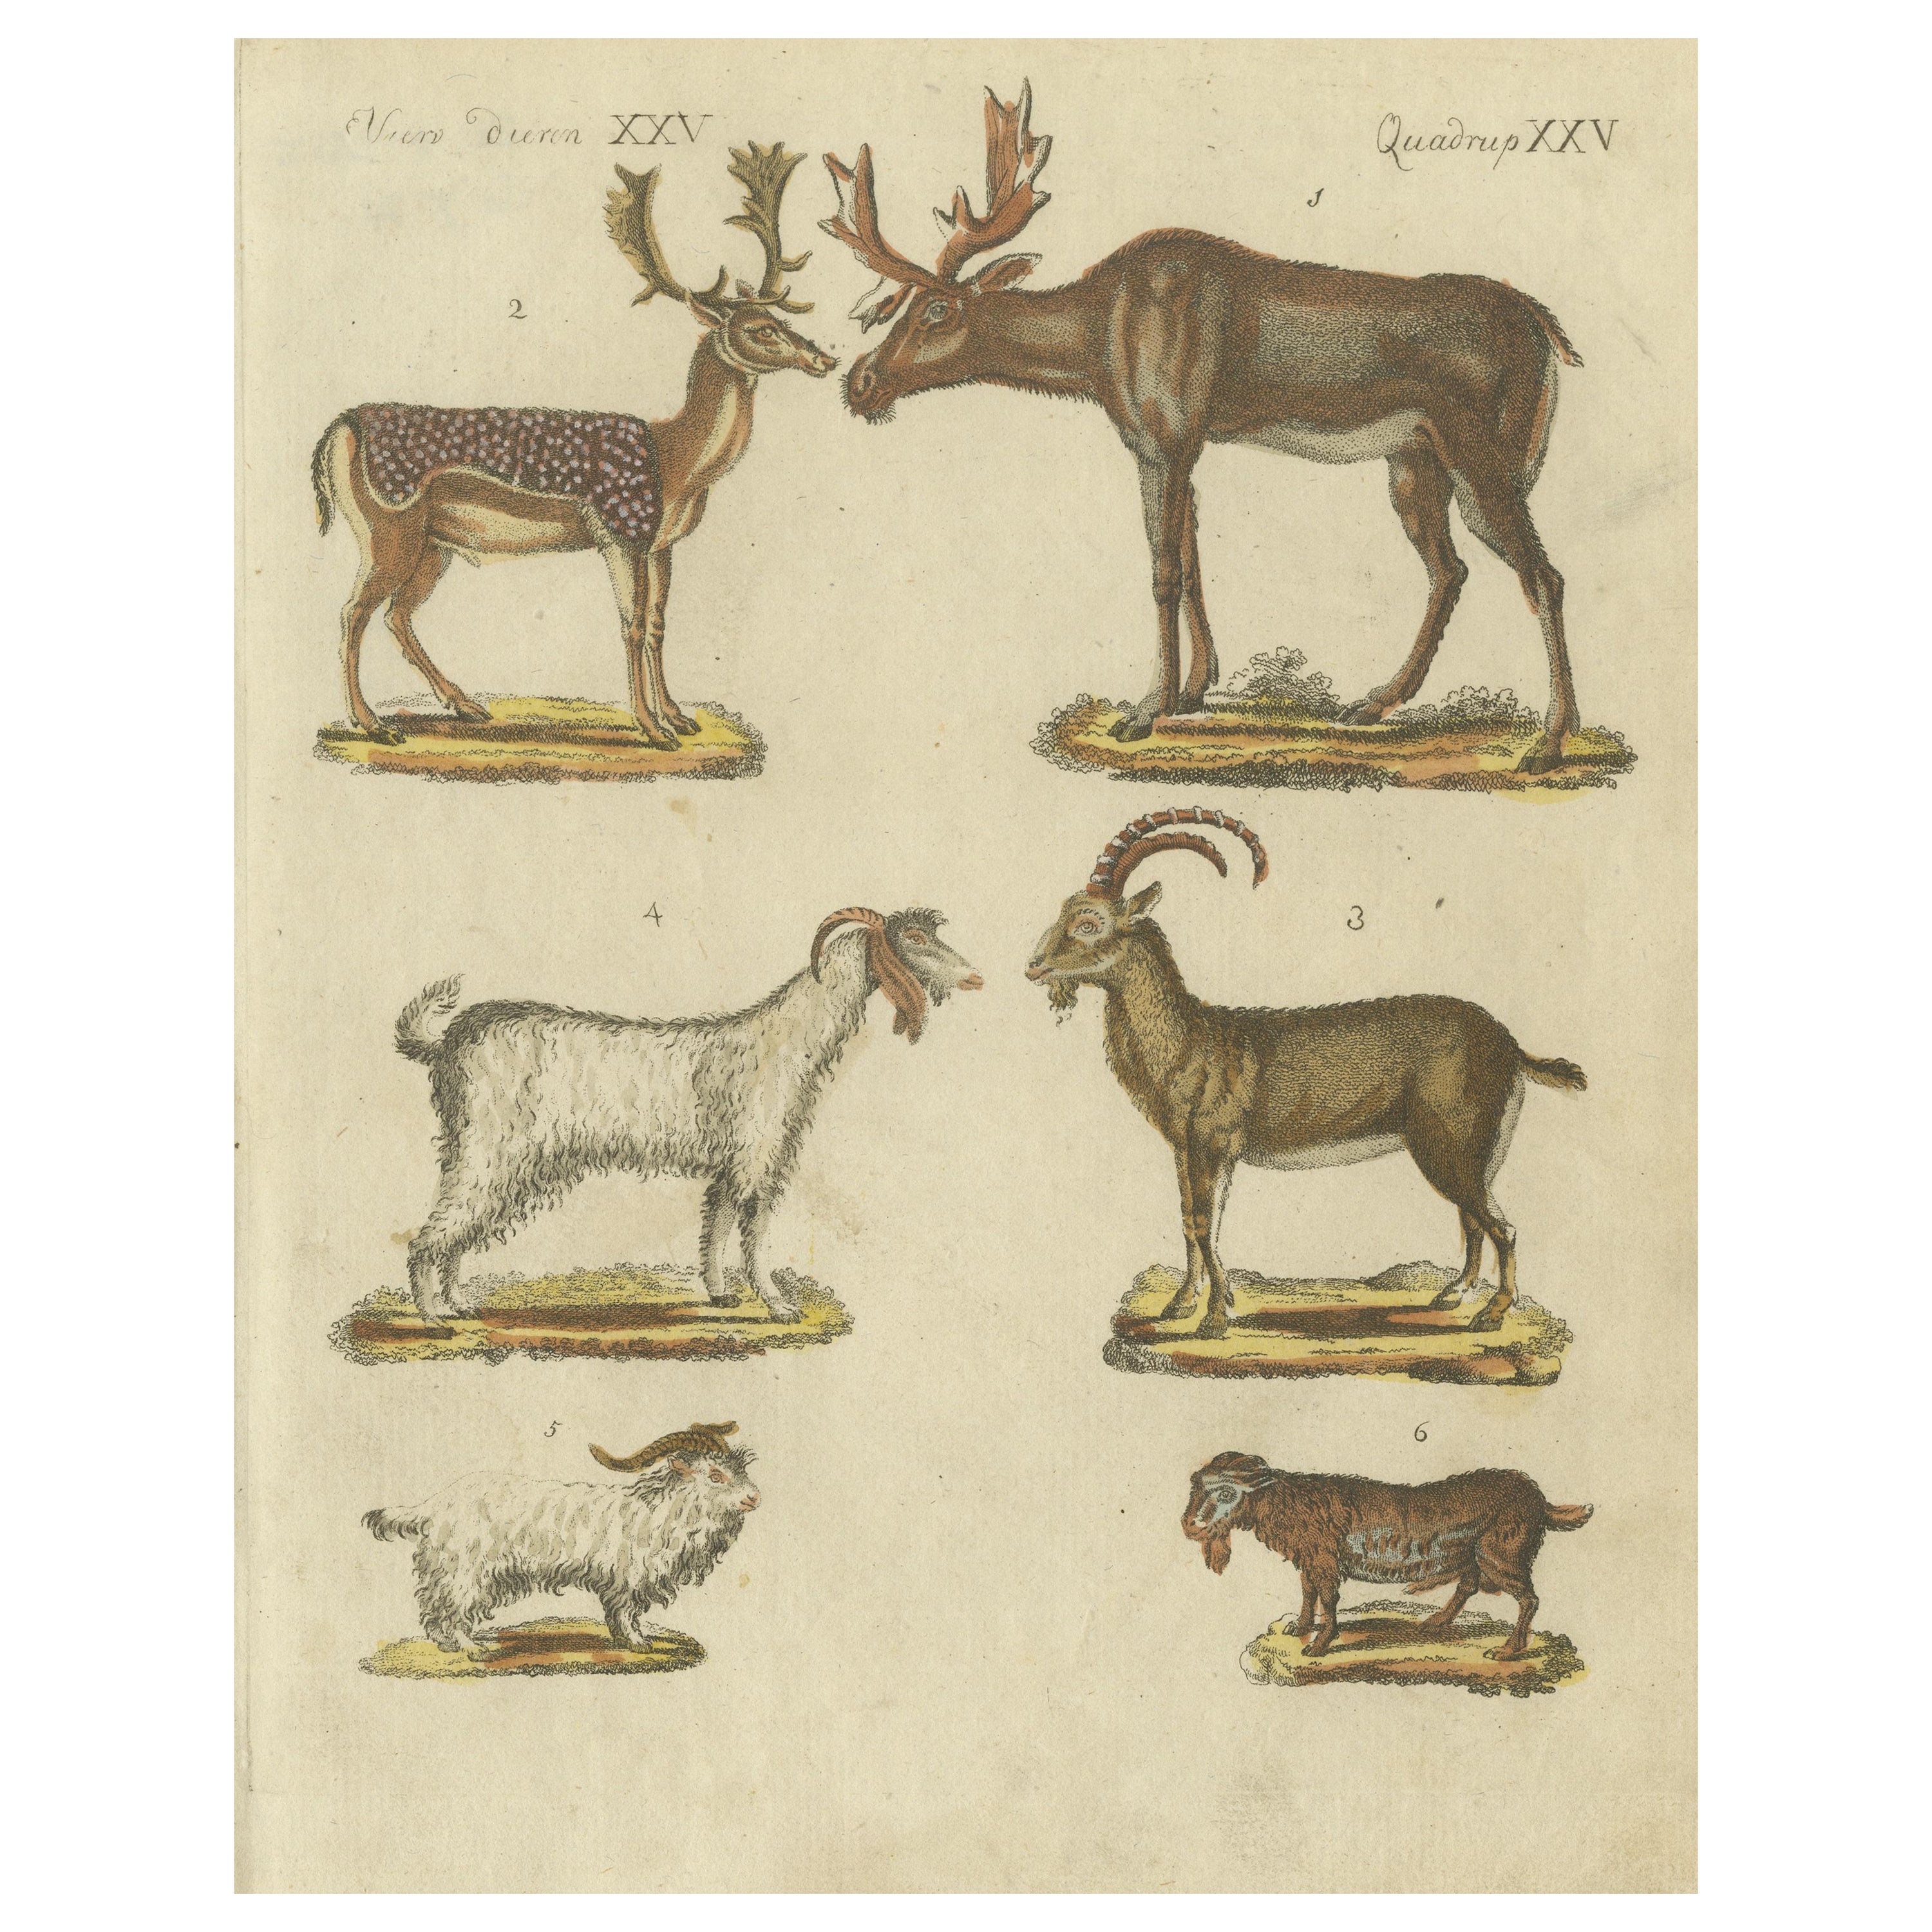 Handkolorierter antiker Druck von Hirschen, Ziegenböcken und Ziegen, um 1820